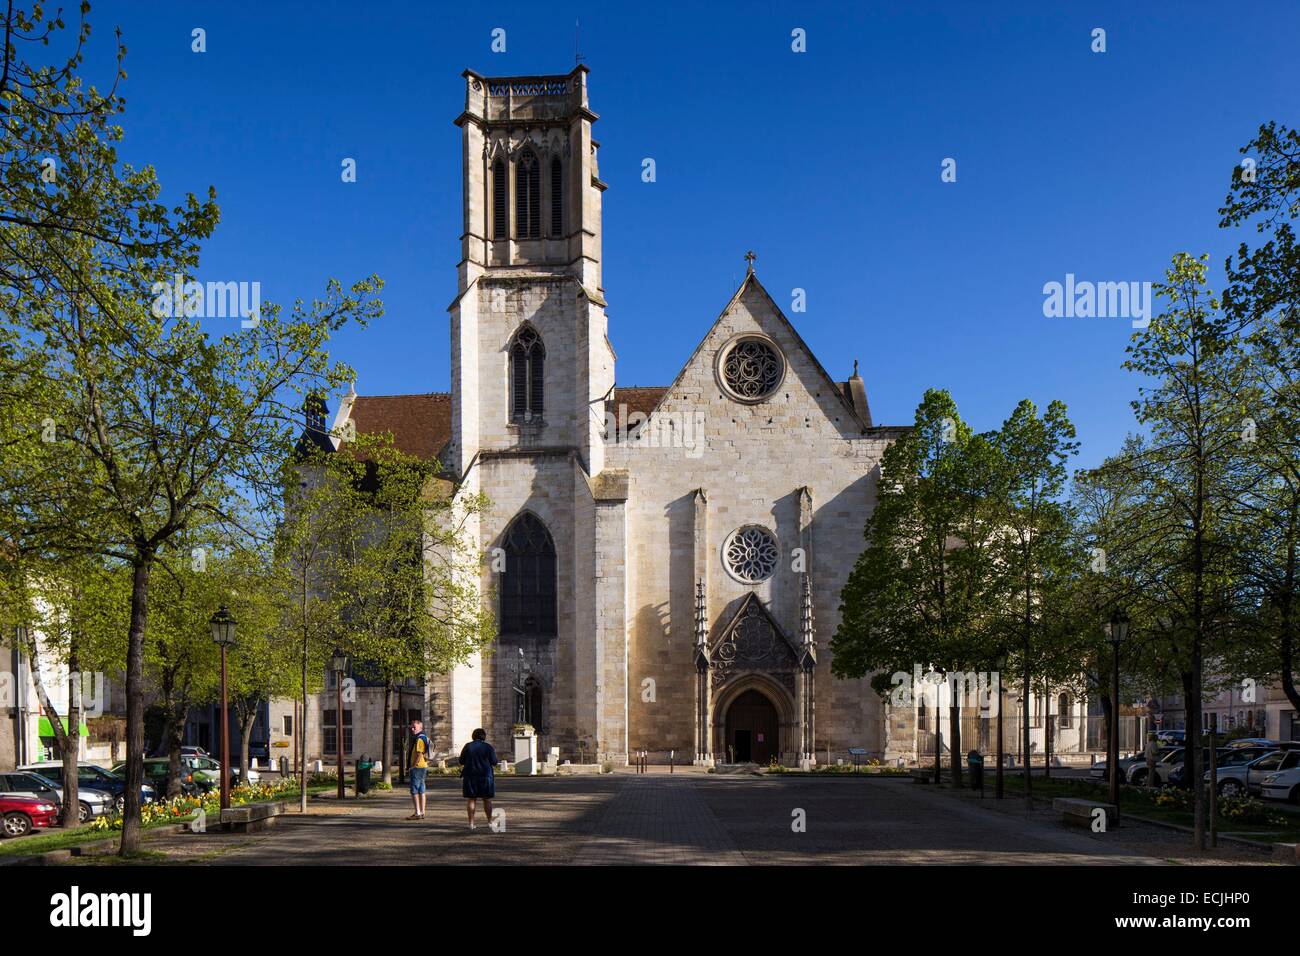 France, Lot et Garonne, Agen, Saint-Caprais Cathedral Stock Photo